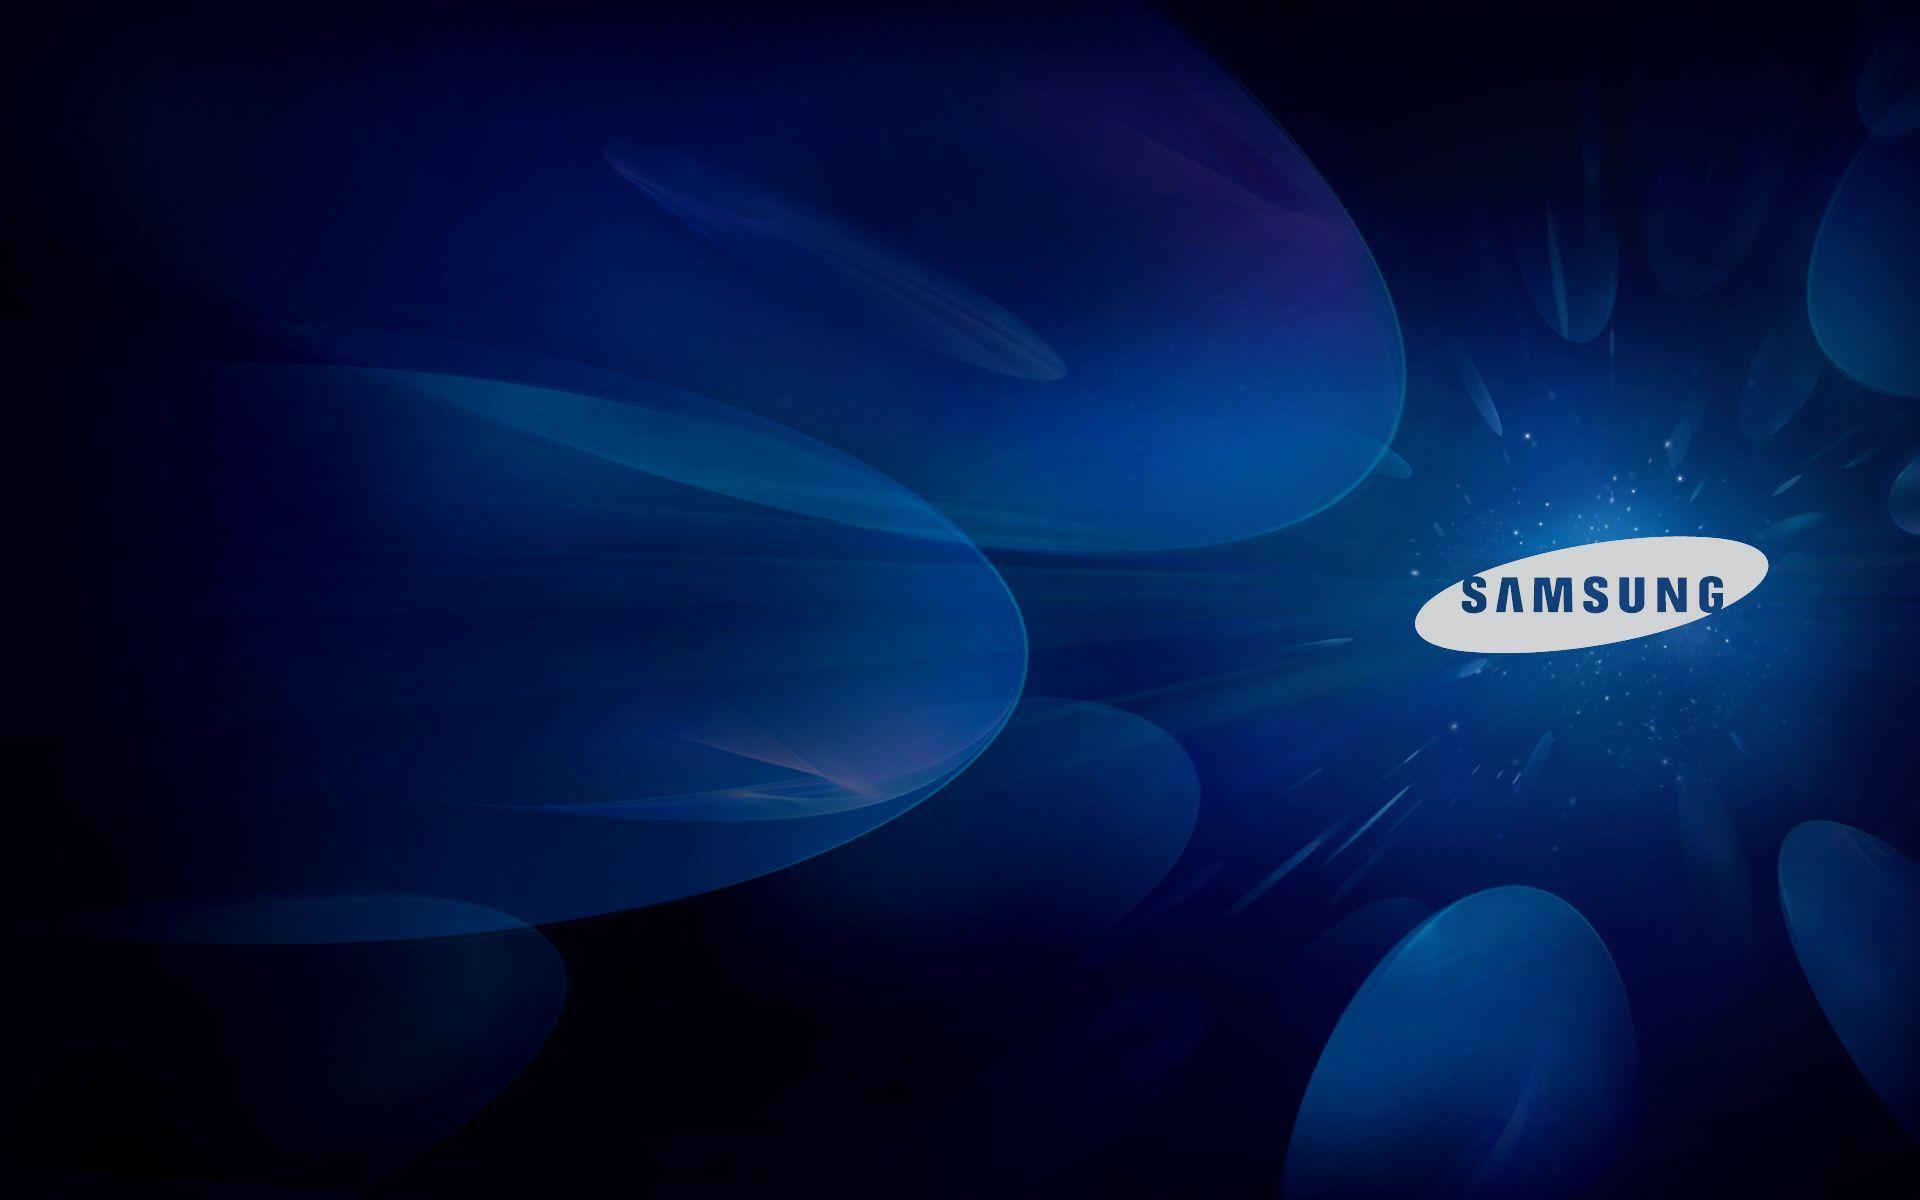 Hình nền Samsung Laptop: Tạo nên không gian làm việc - học tập đầy phong cách với những hình nền tuyệt đẹp cho Samsung Laptop! Với màn hình rộng và độ phân giải cao, bạn sẽ được trải nghiệm những hình ảnh sống động và sắc nét nhất. Thay đổi hình nền định kỳ để thêm phần mới mẻ cho ngày mới của bạn!